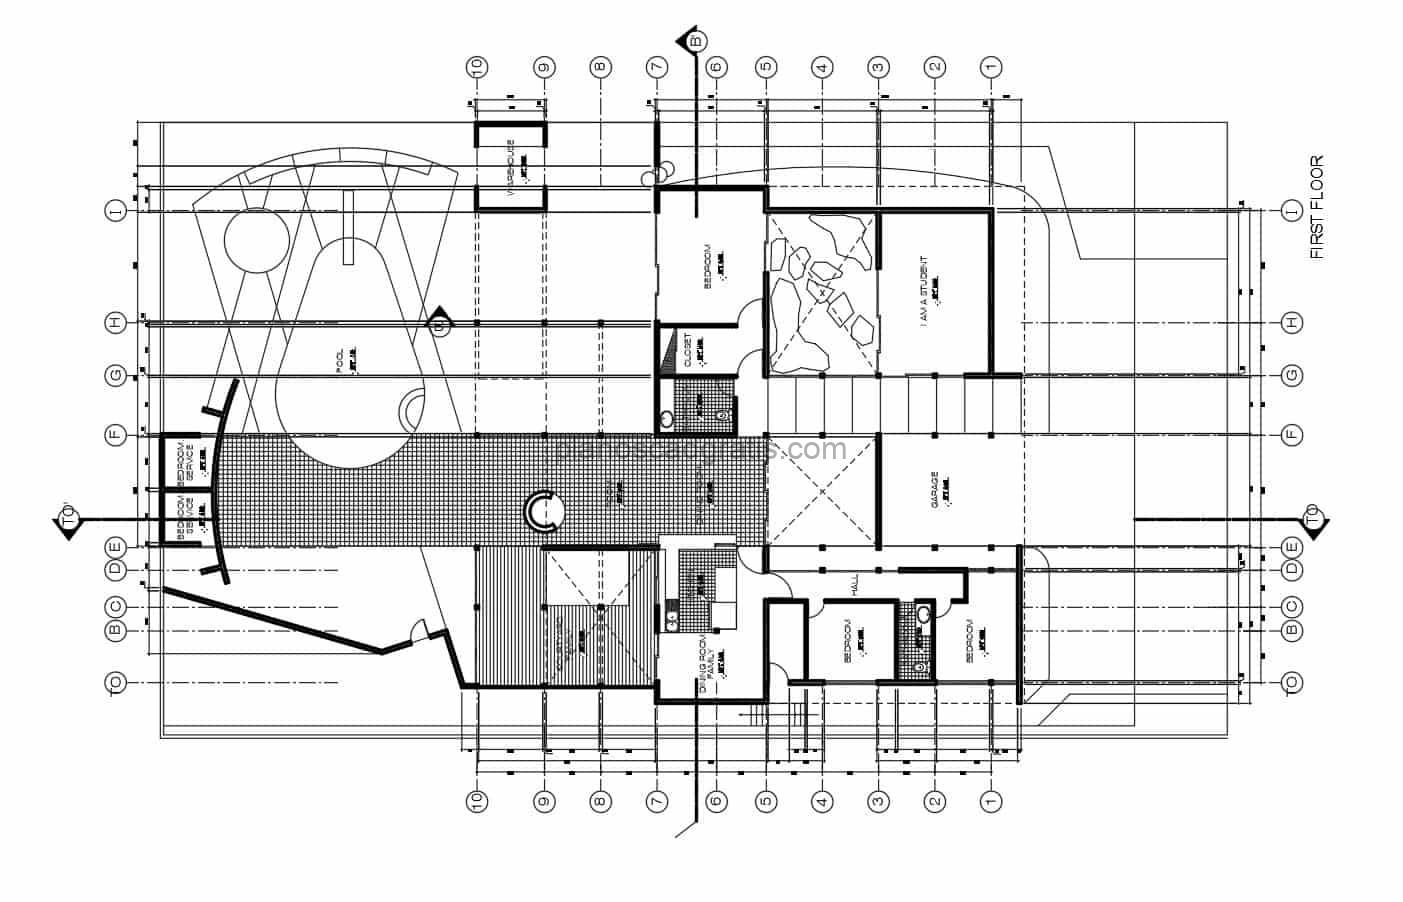 planos arquitectonicos de casa estudio con cuatro habitaciones y area de piscina en parte exterior, planos con secciones, fachadas y dimensiones para descarga gratis en formato dwg de autocad